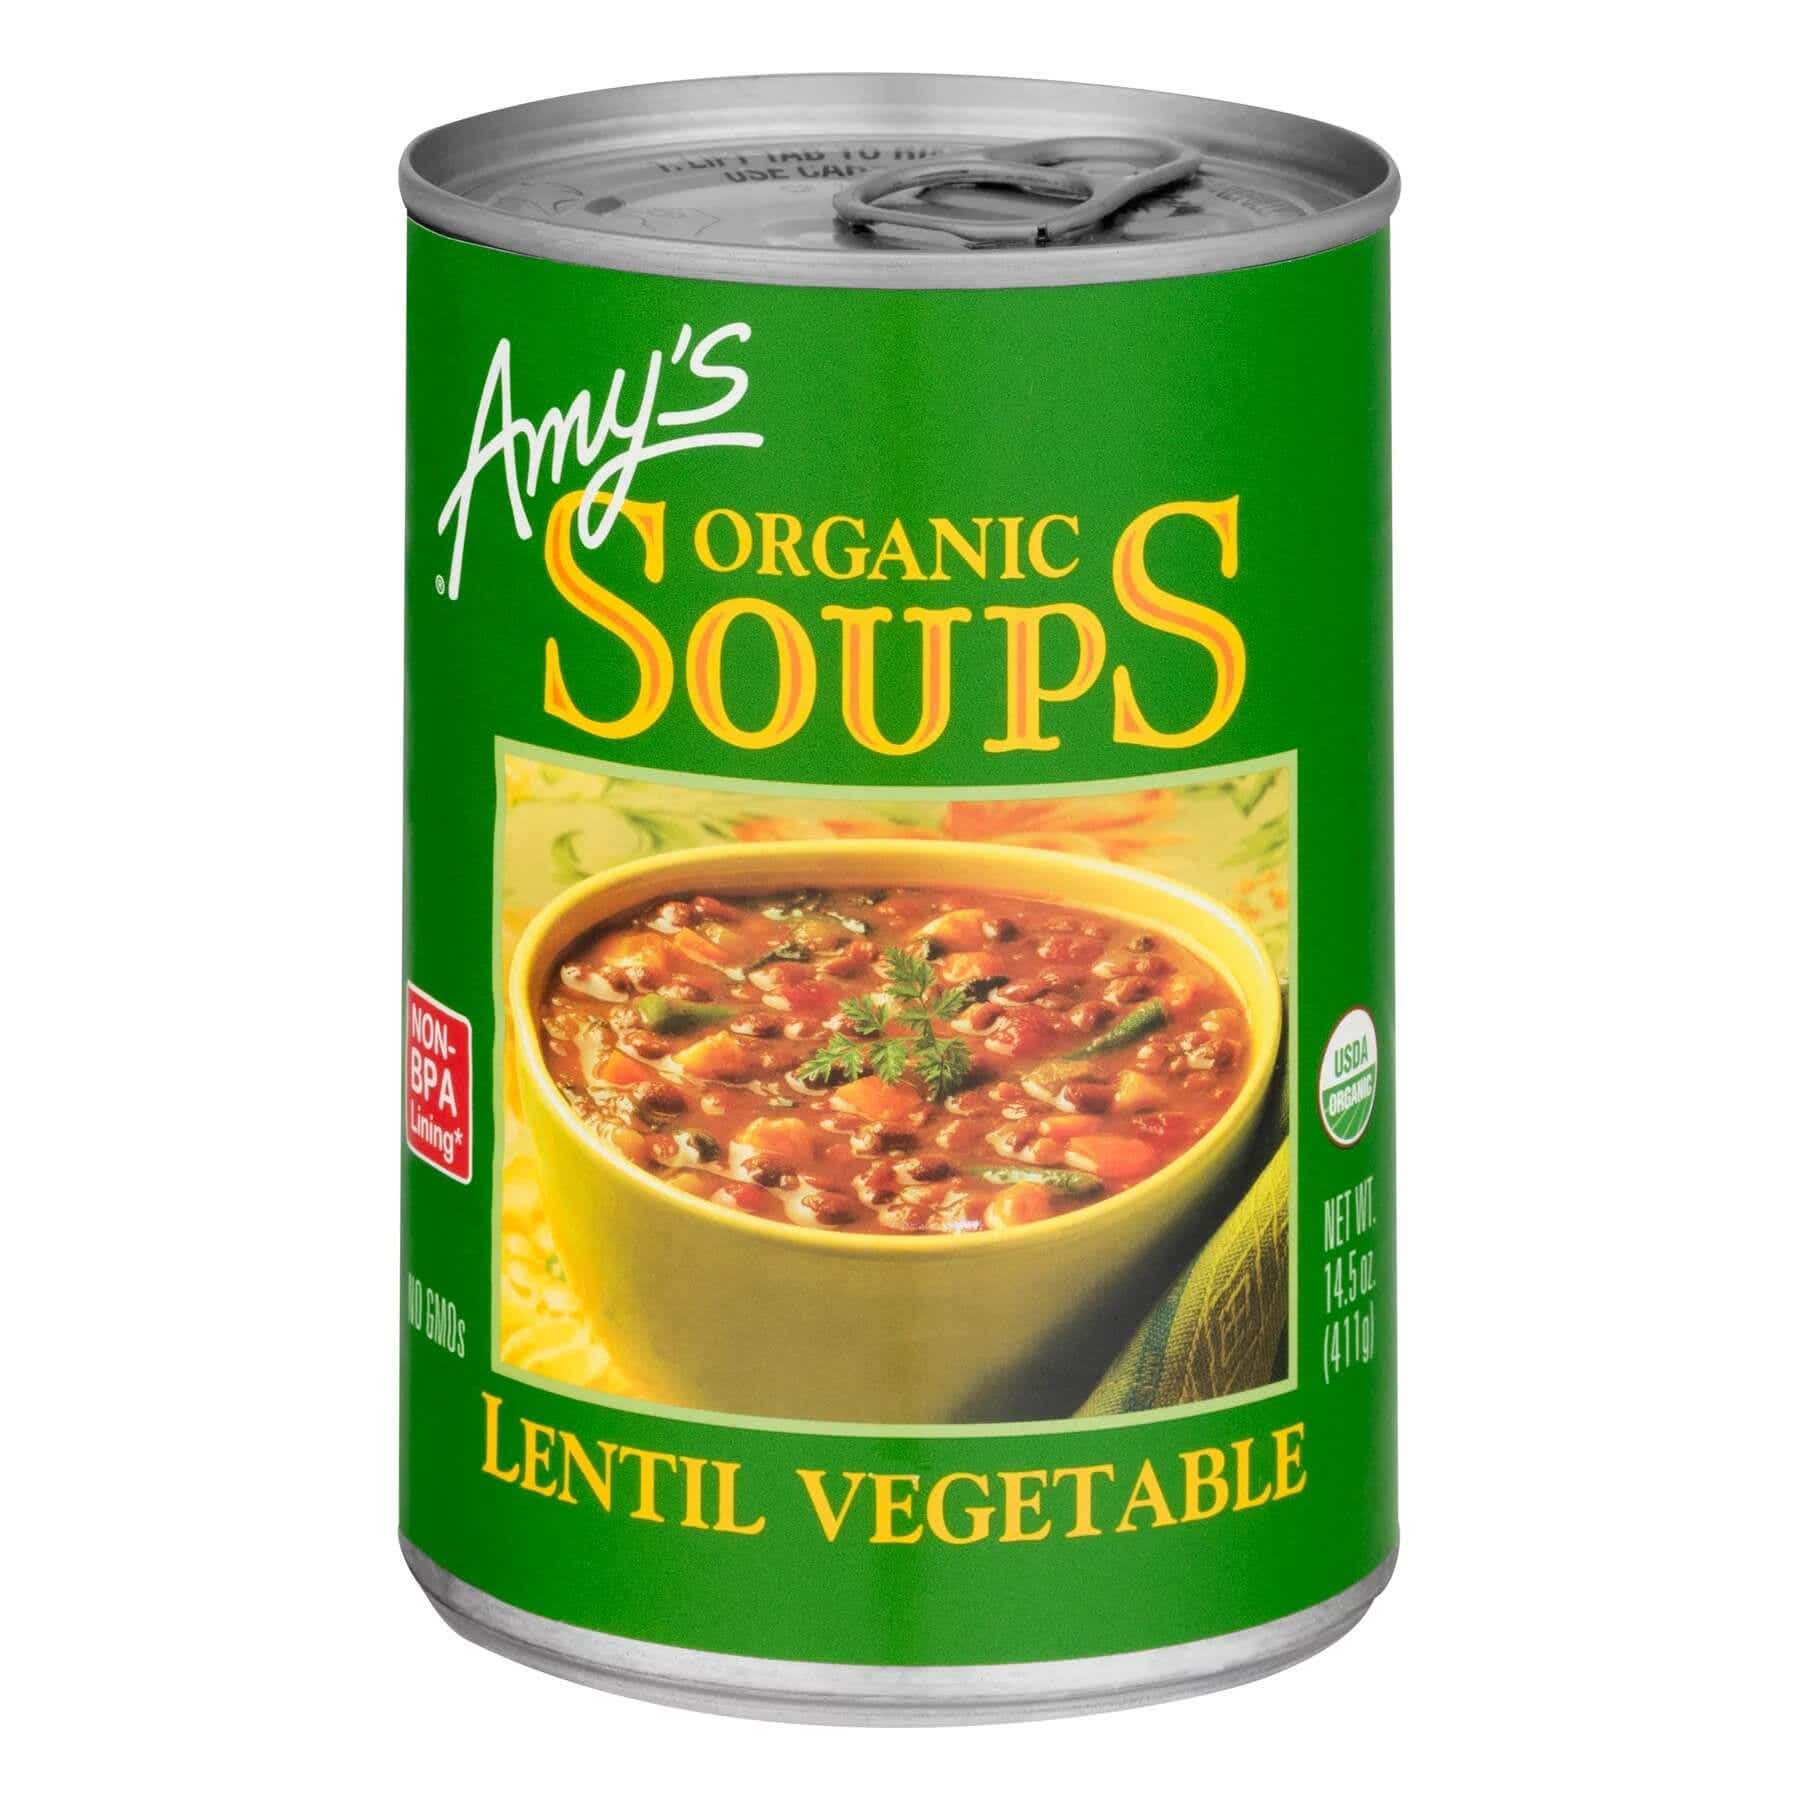 amy's lentil vegetable soup can